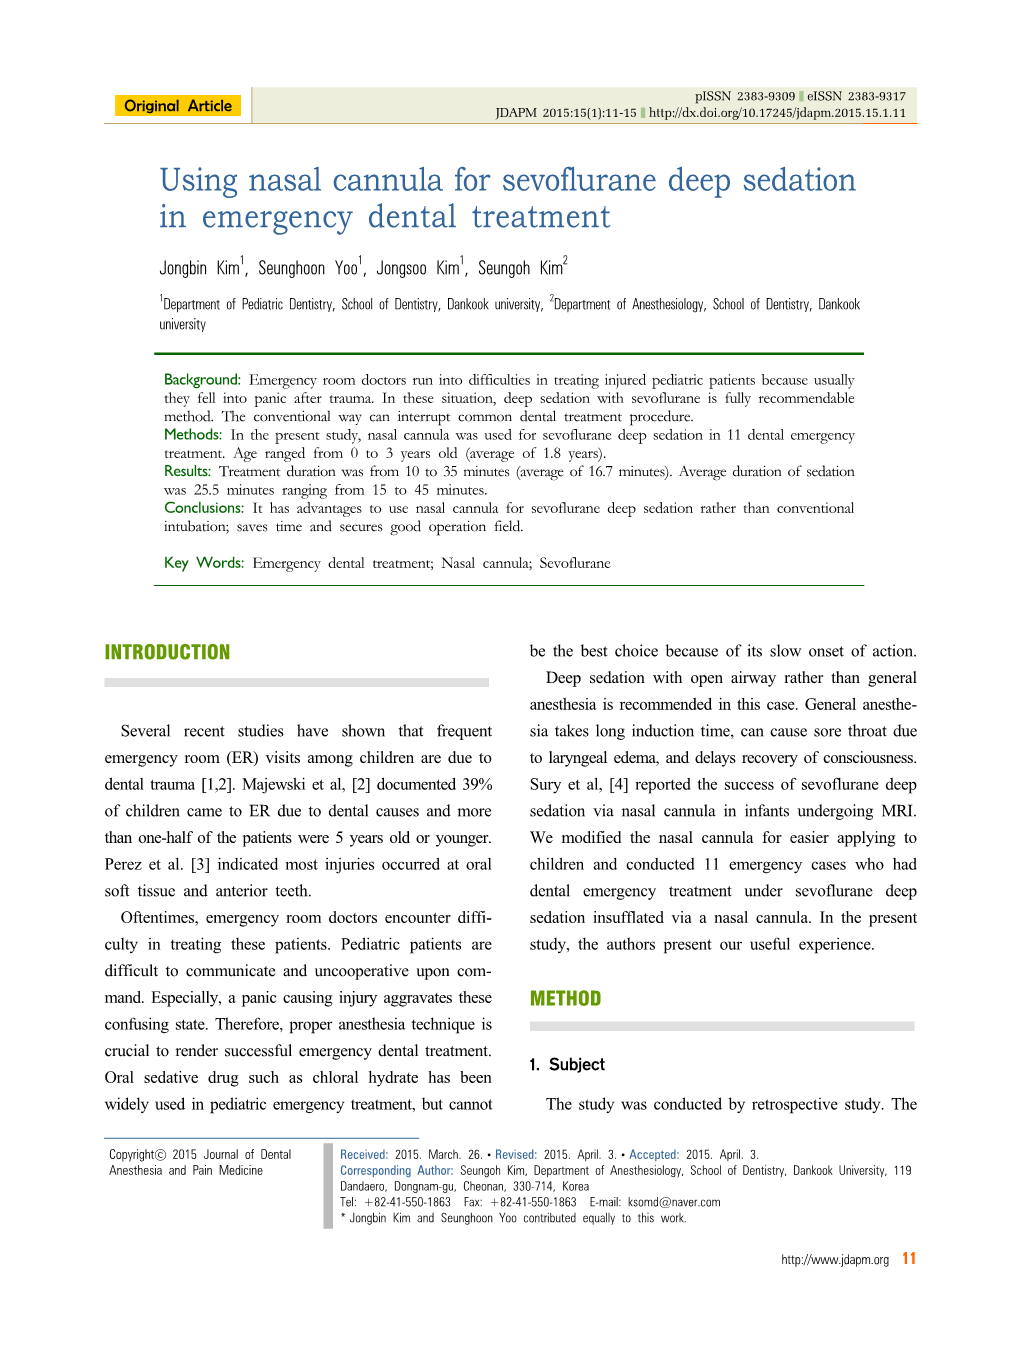 Using Nasal Cannula for Sevoflurane Deep Sedation in Emergency Dental Treatment